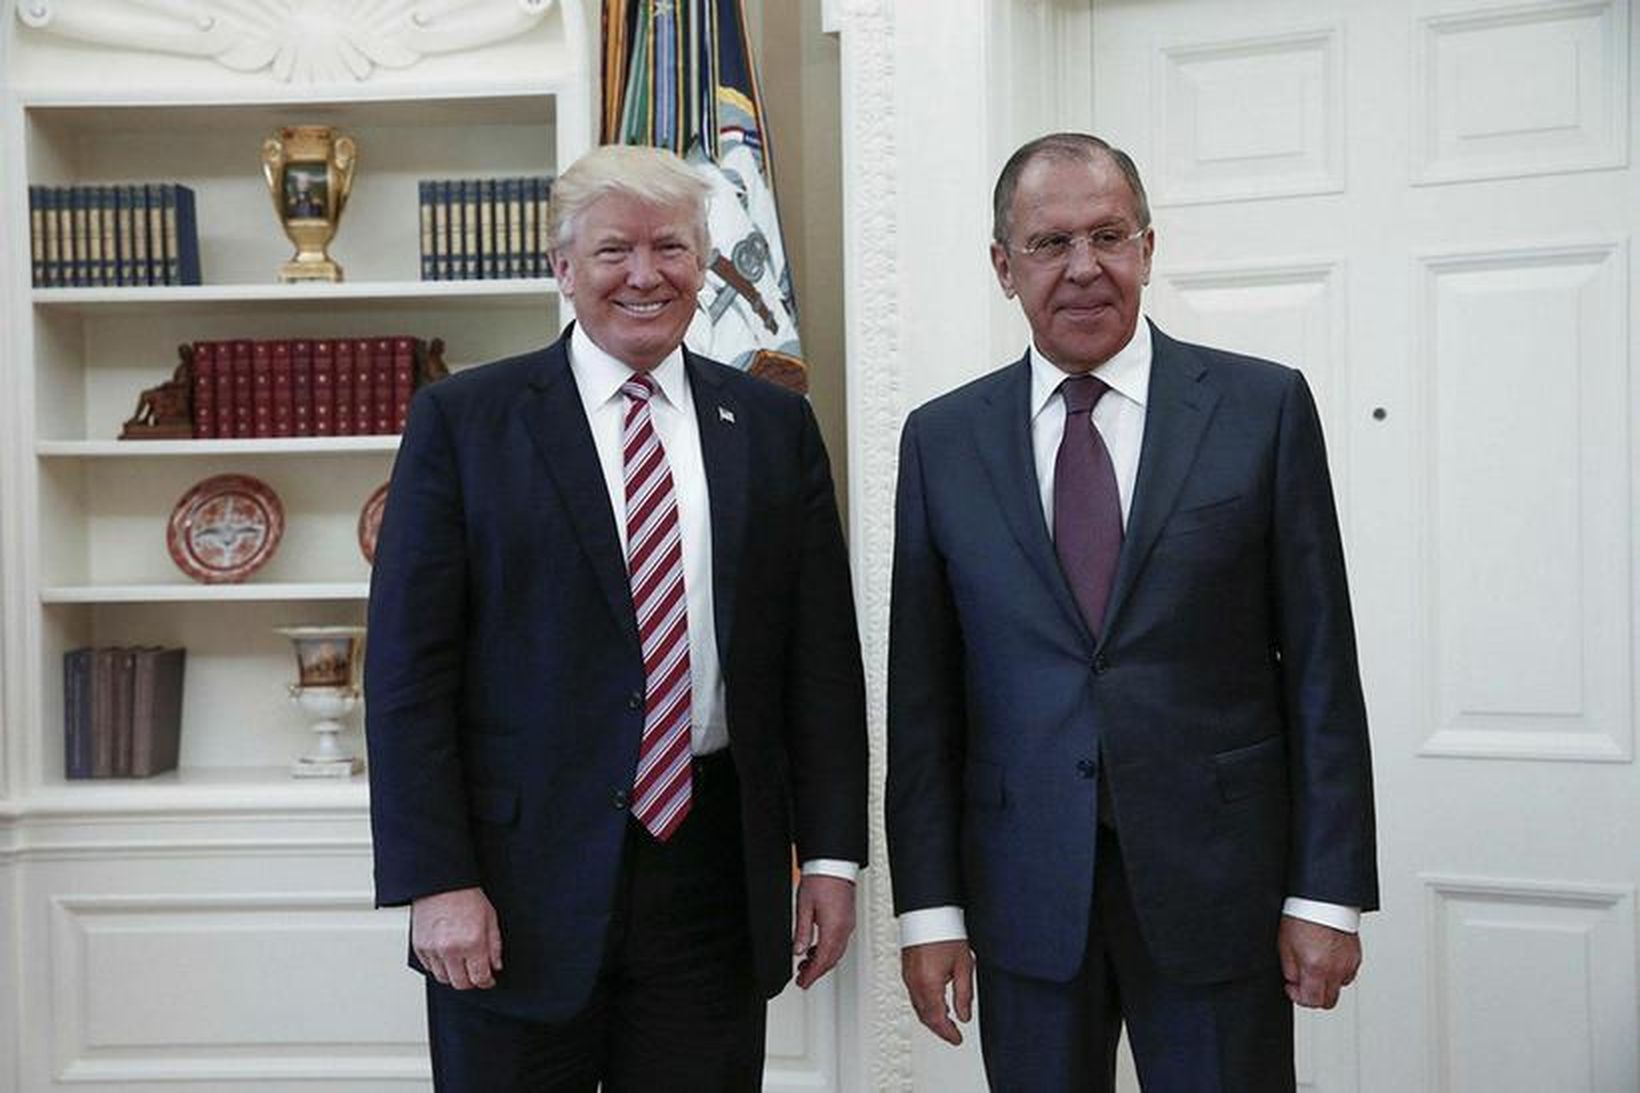 Donald Trump ásamt Sergei Lavrov í Hvíta húsinu í síðustu …